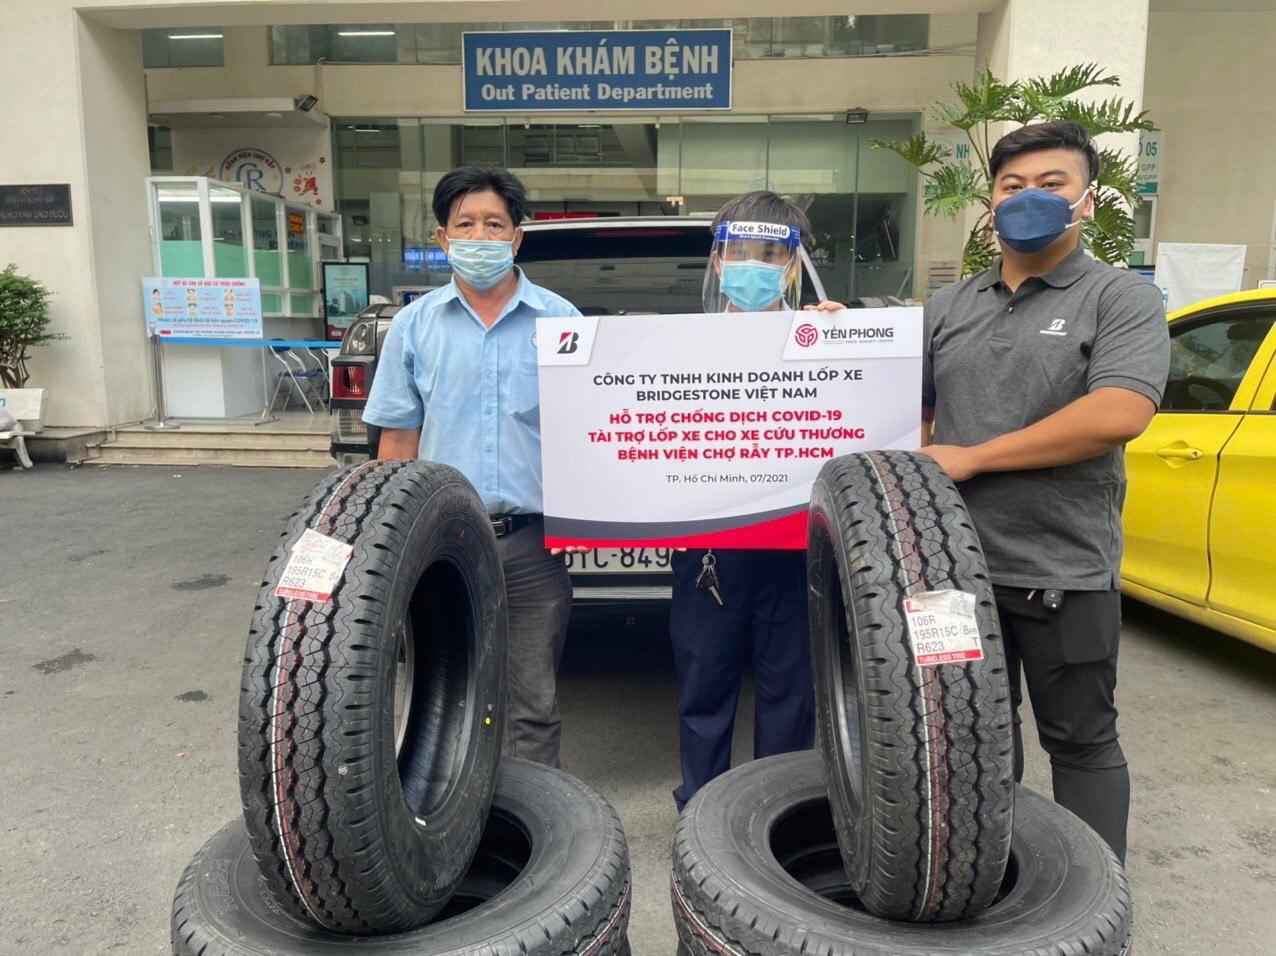 Đội cứu thương tại Bệnh viện Chợ Rẫy nhận lốp xe trang bị cho xe cứu thương do Bridgestone Việt Nam hỗ trợ